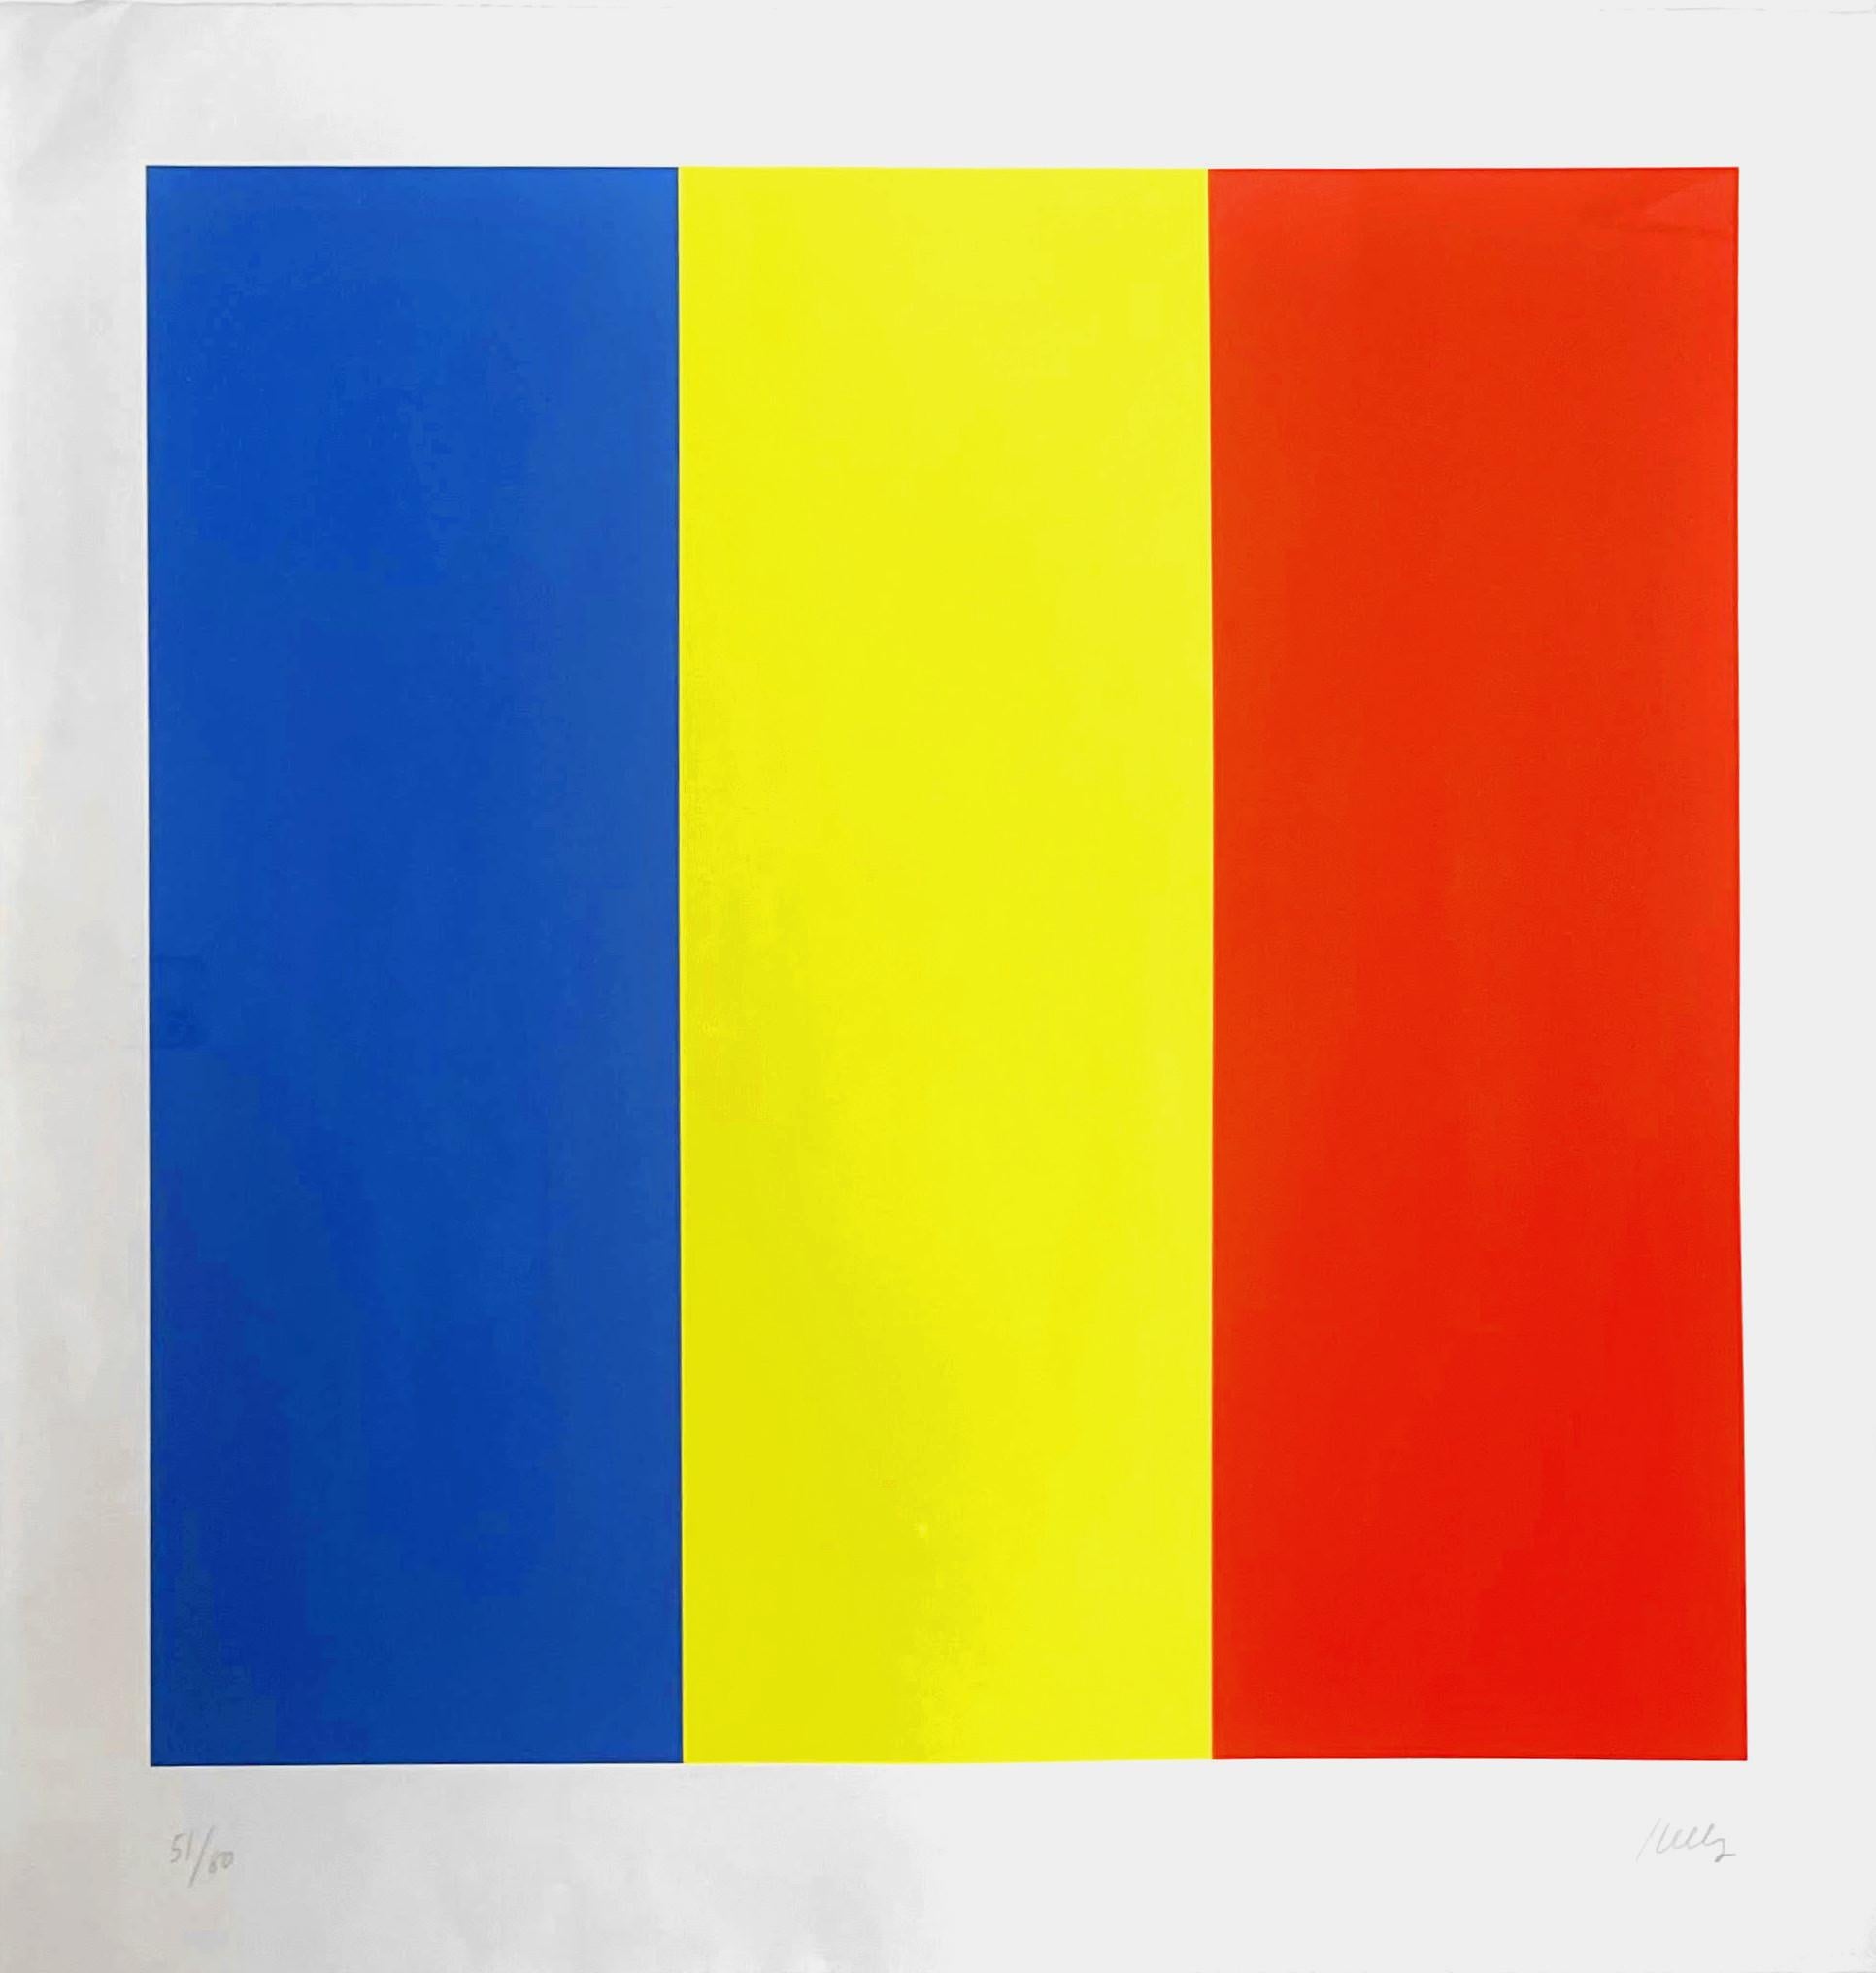 Blau / Gelb / Rot (Minimalistisch), Print, von Ellsworth Kelly